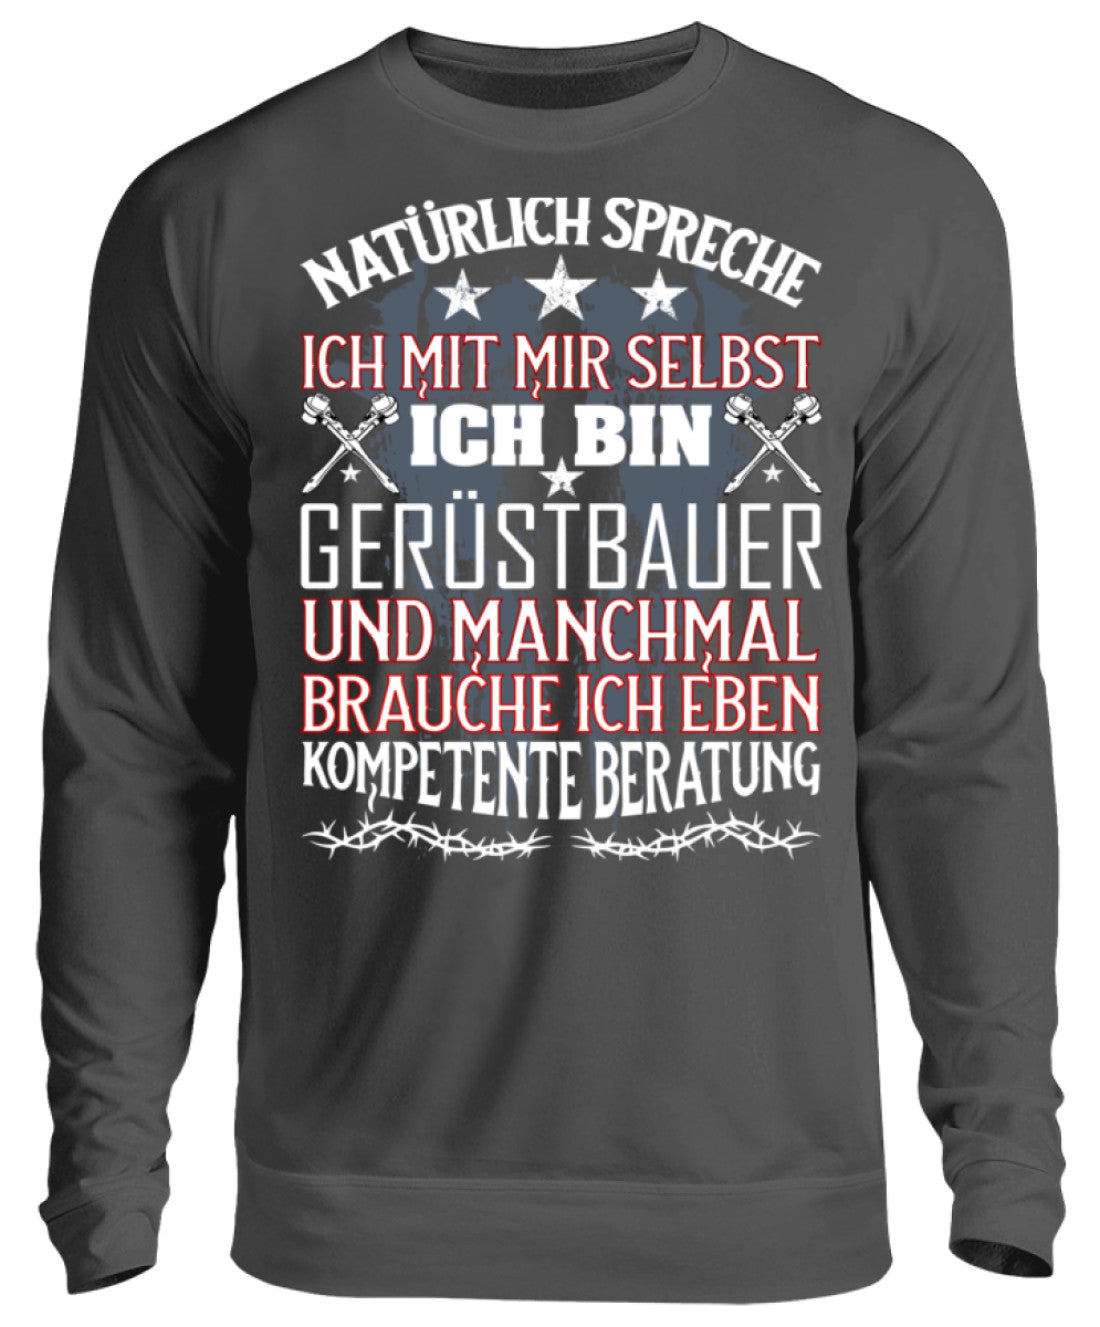 Gerüstbauer / Kompetente Beratung  - Unisex Pullover €32.95 Gerüstbauer - Shop >>